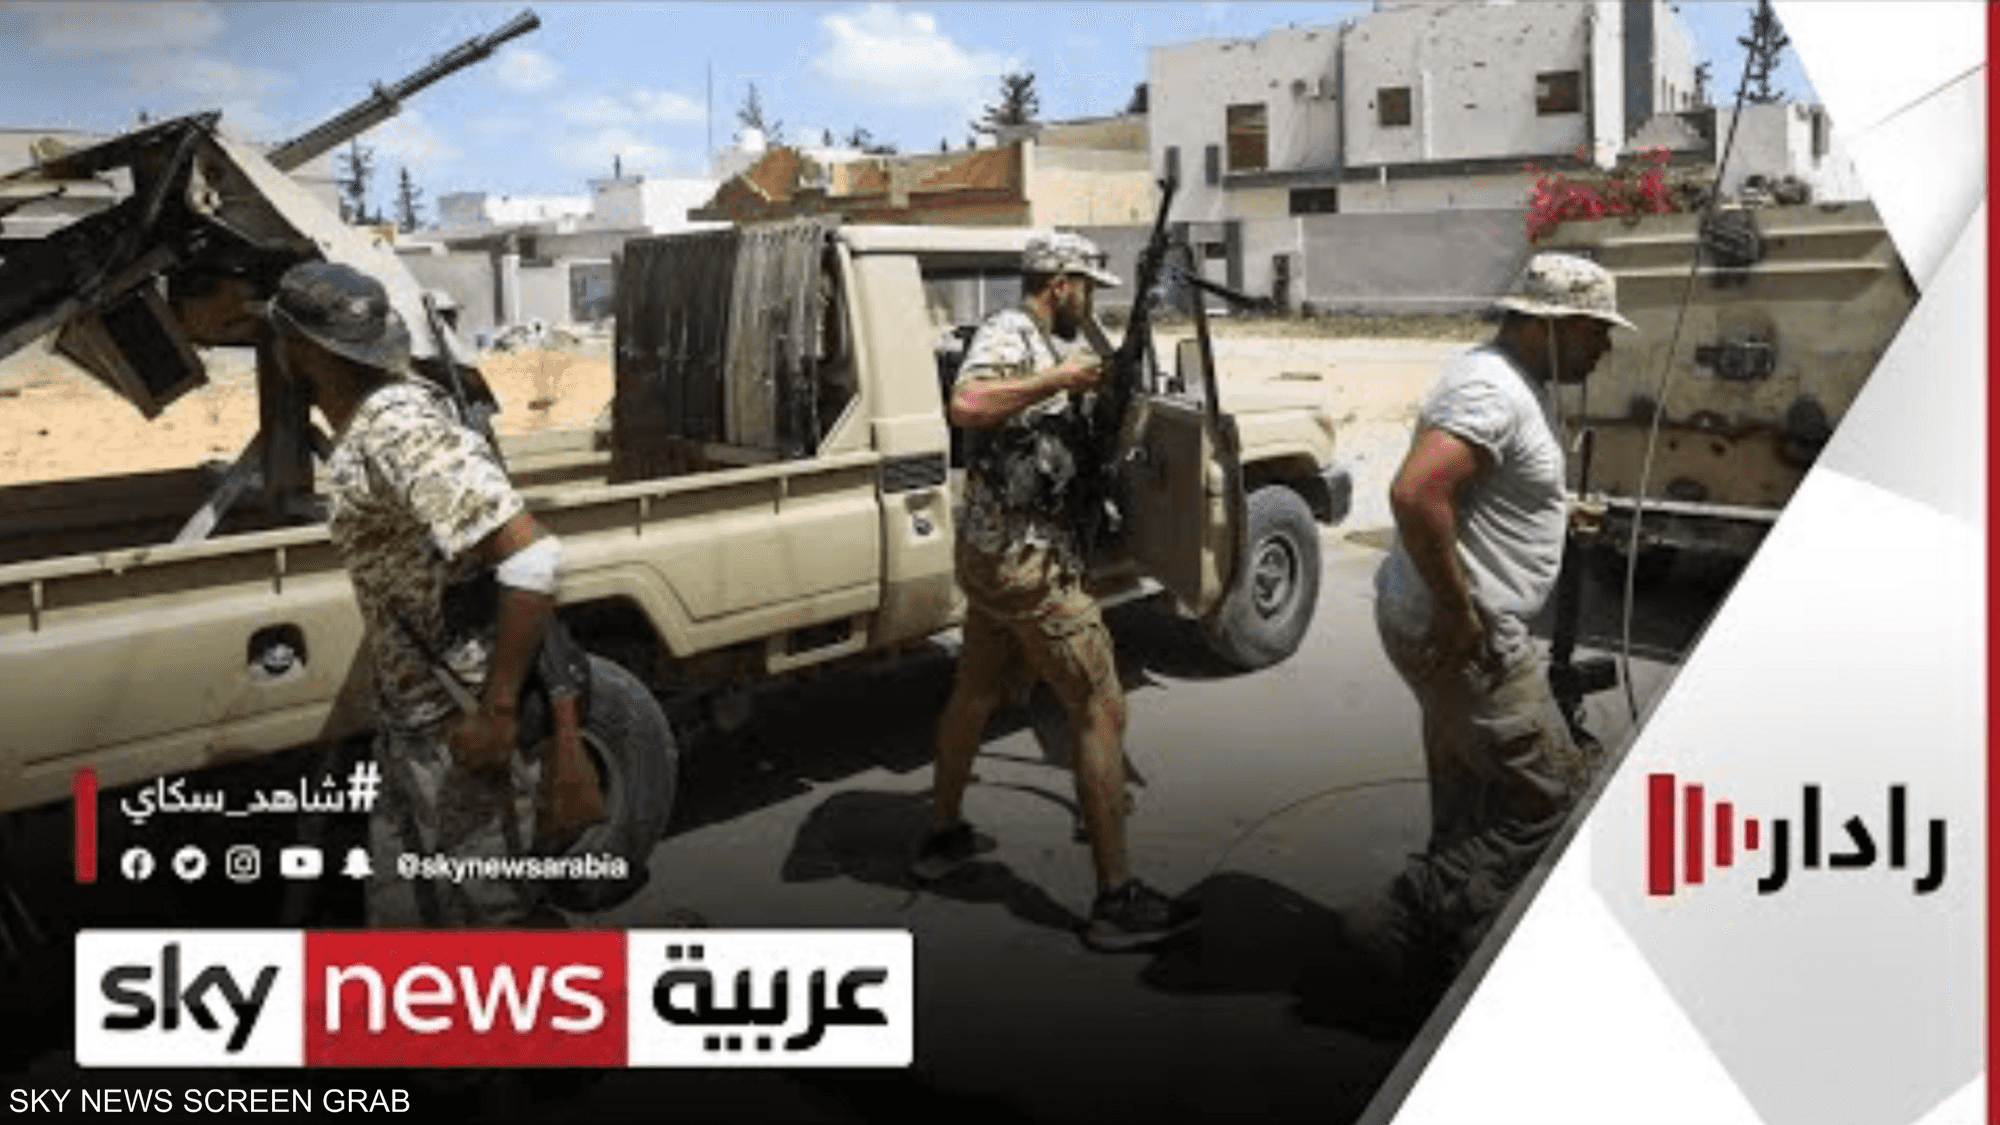 اللجنة العسكرية في ليبيا تؤكد التزامها بإخراج المرتزقة